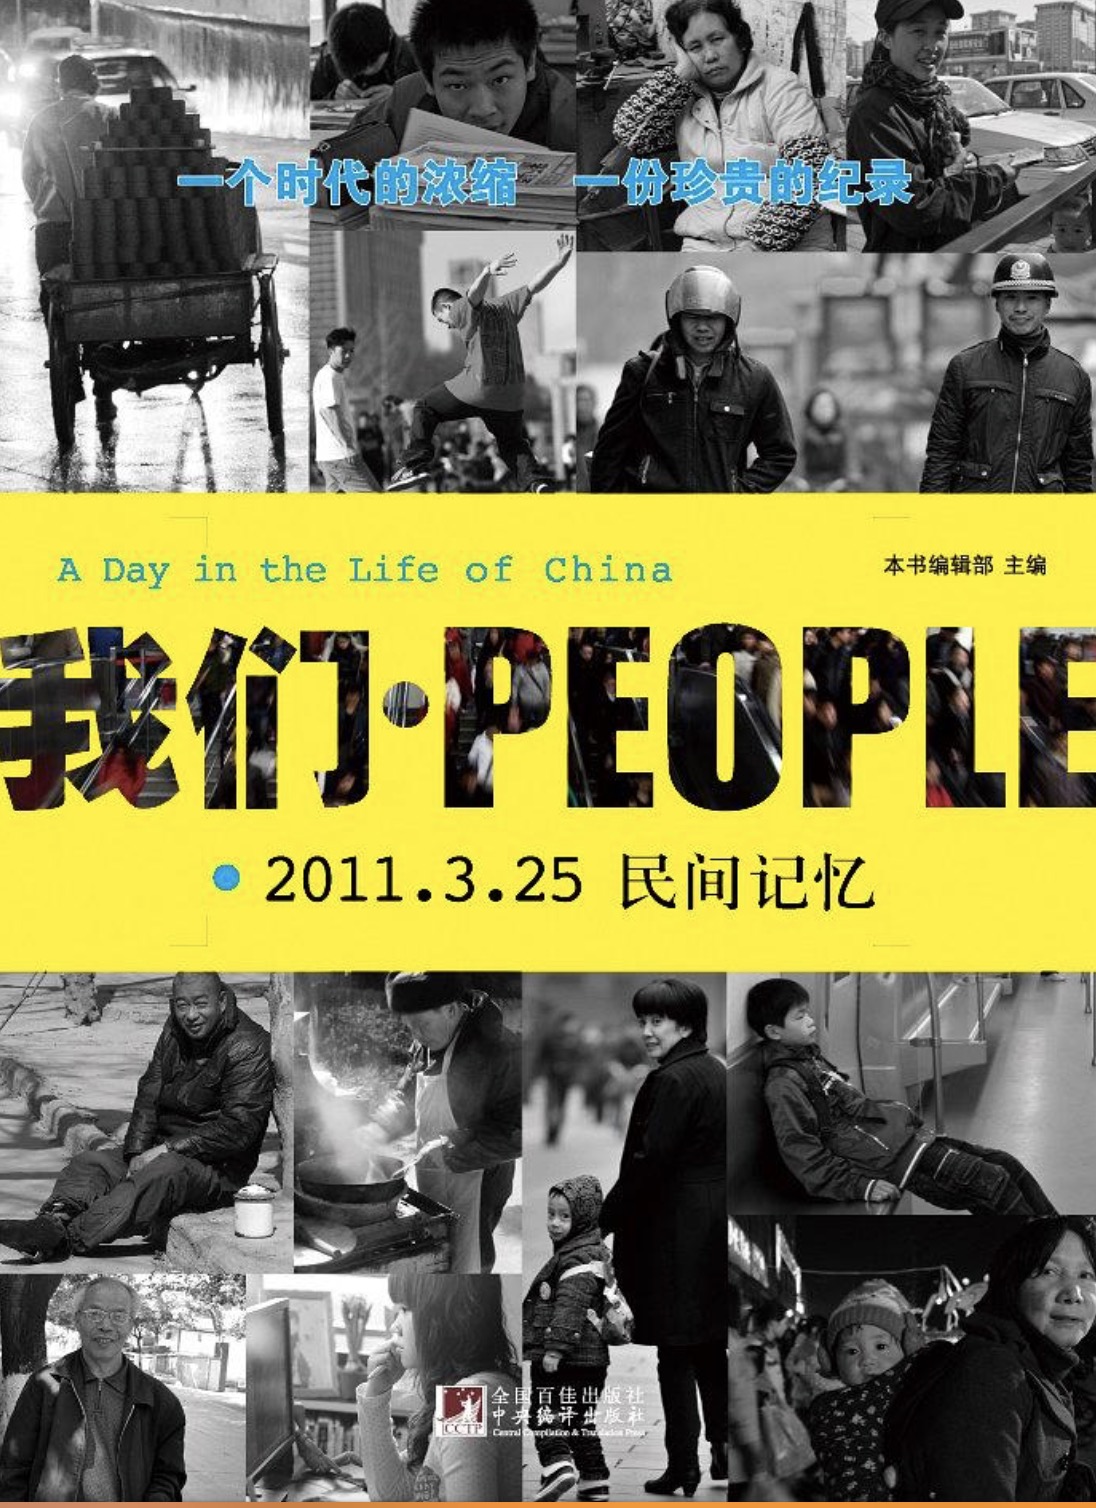 我們·PEOPLE:2011.3.25民間記憶